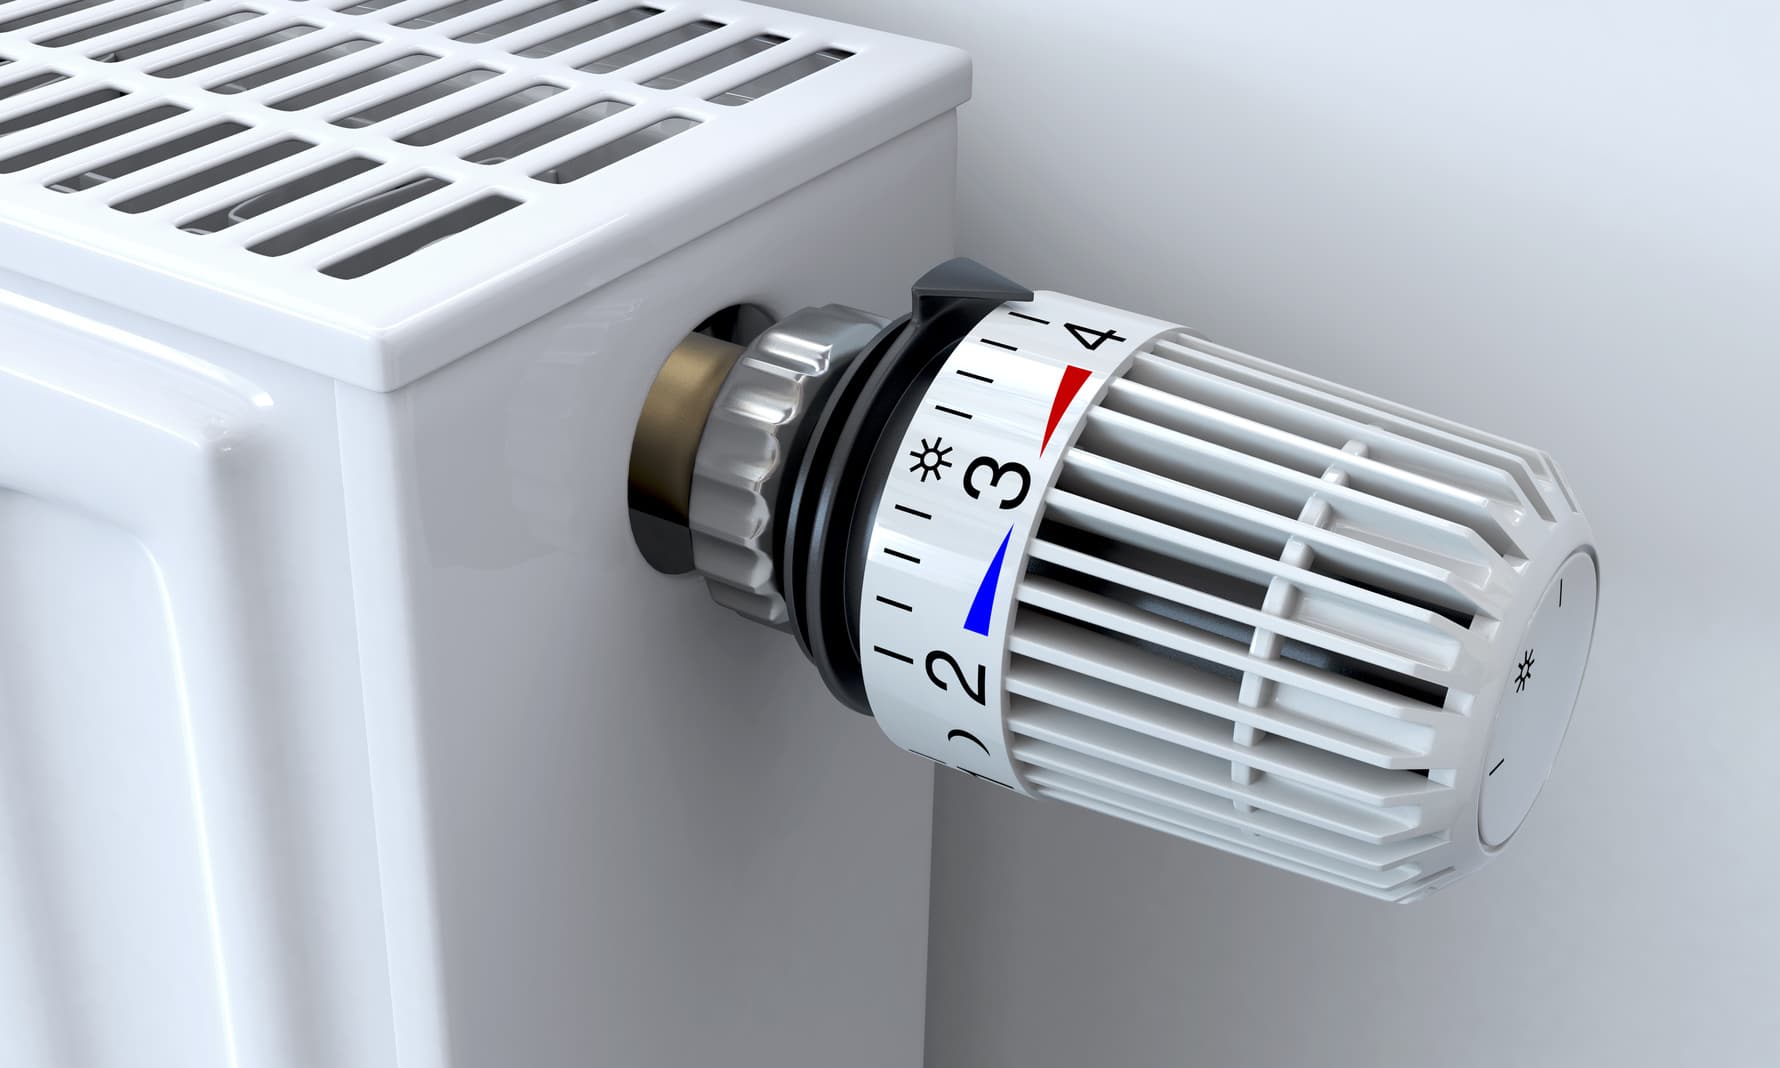 Chauffage : comment régler le thermostat et les radiateurs ?